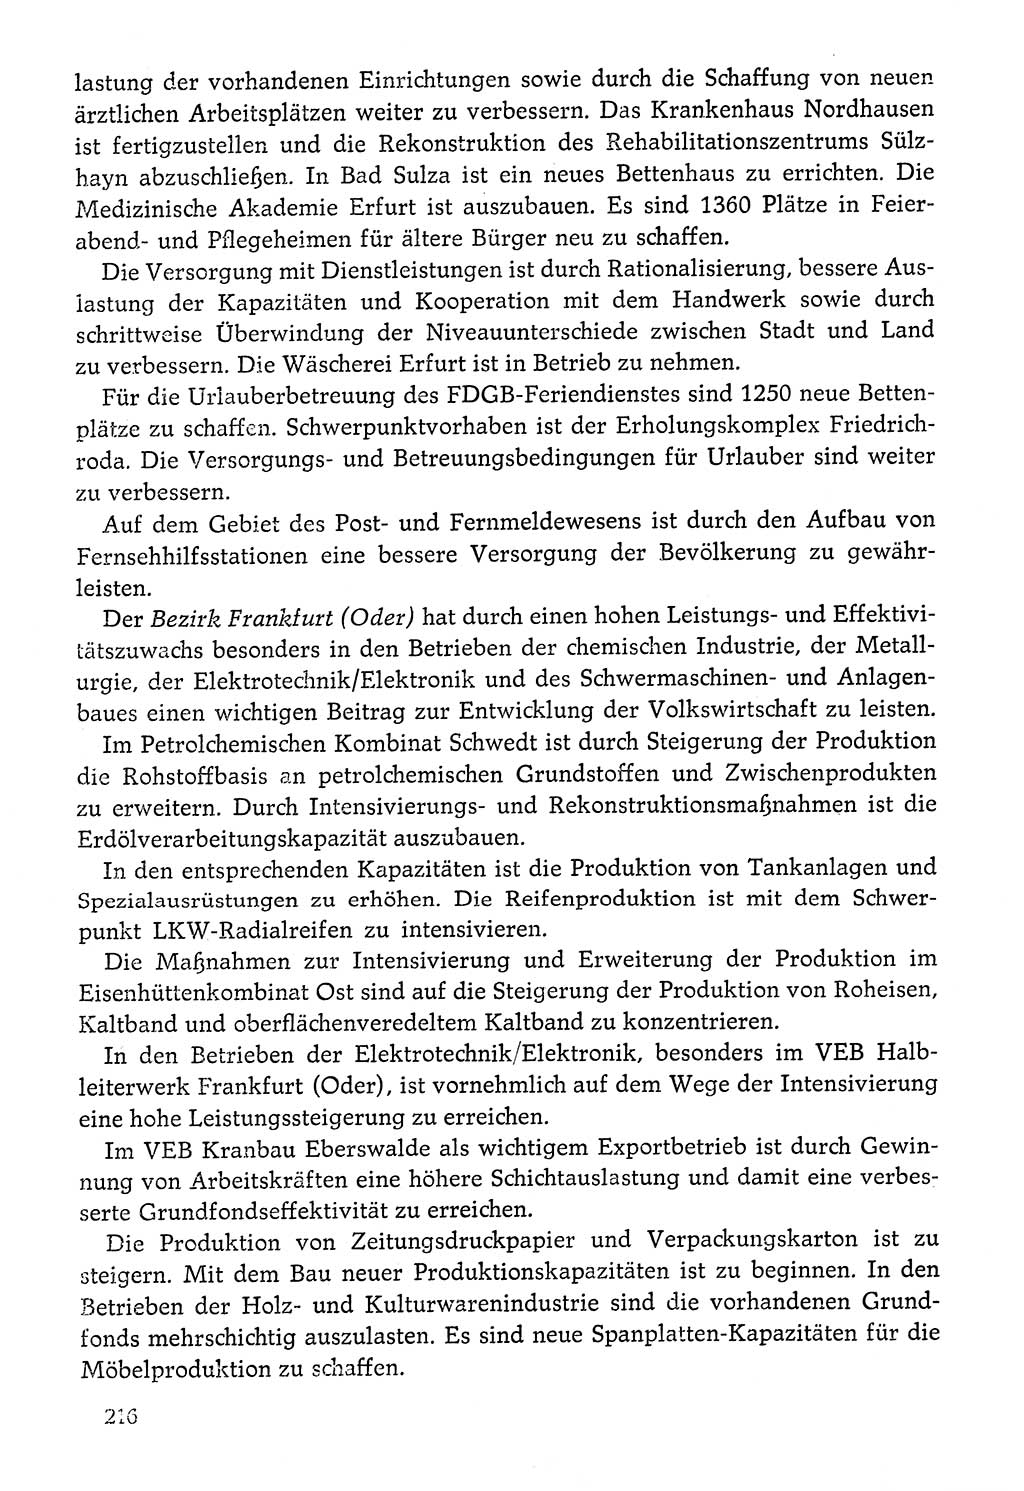 Dokumente der Sozialistischen Einheitspartei Deutschlands (SED) [Deutsche Demokratische Republik (DDR)] 1976-1977, Seite 216 (Dok. SED DDR 1976-1977, S. 216)